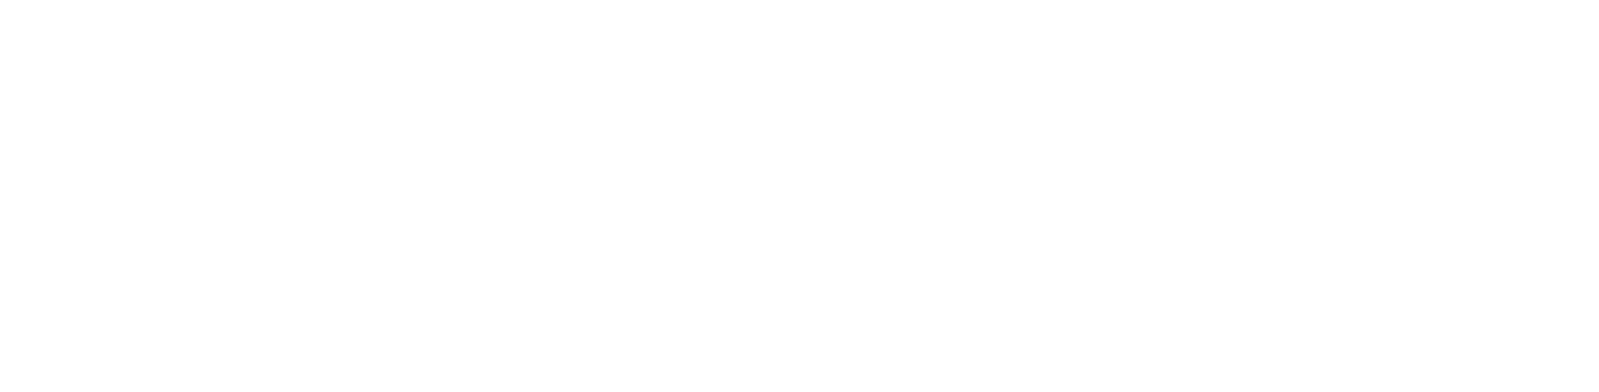 EOG Resources logo large for dark backgrounds (transparent PNG)